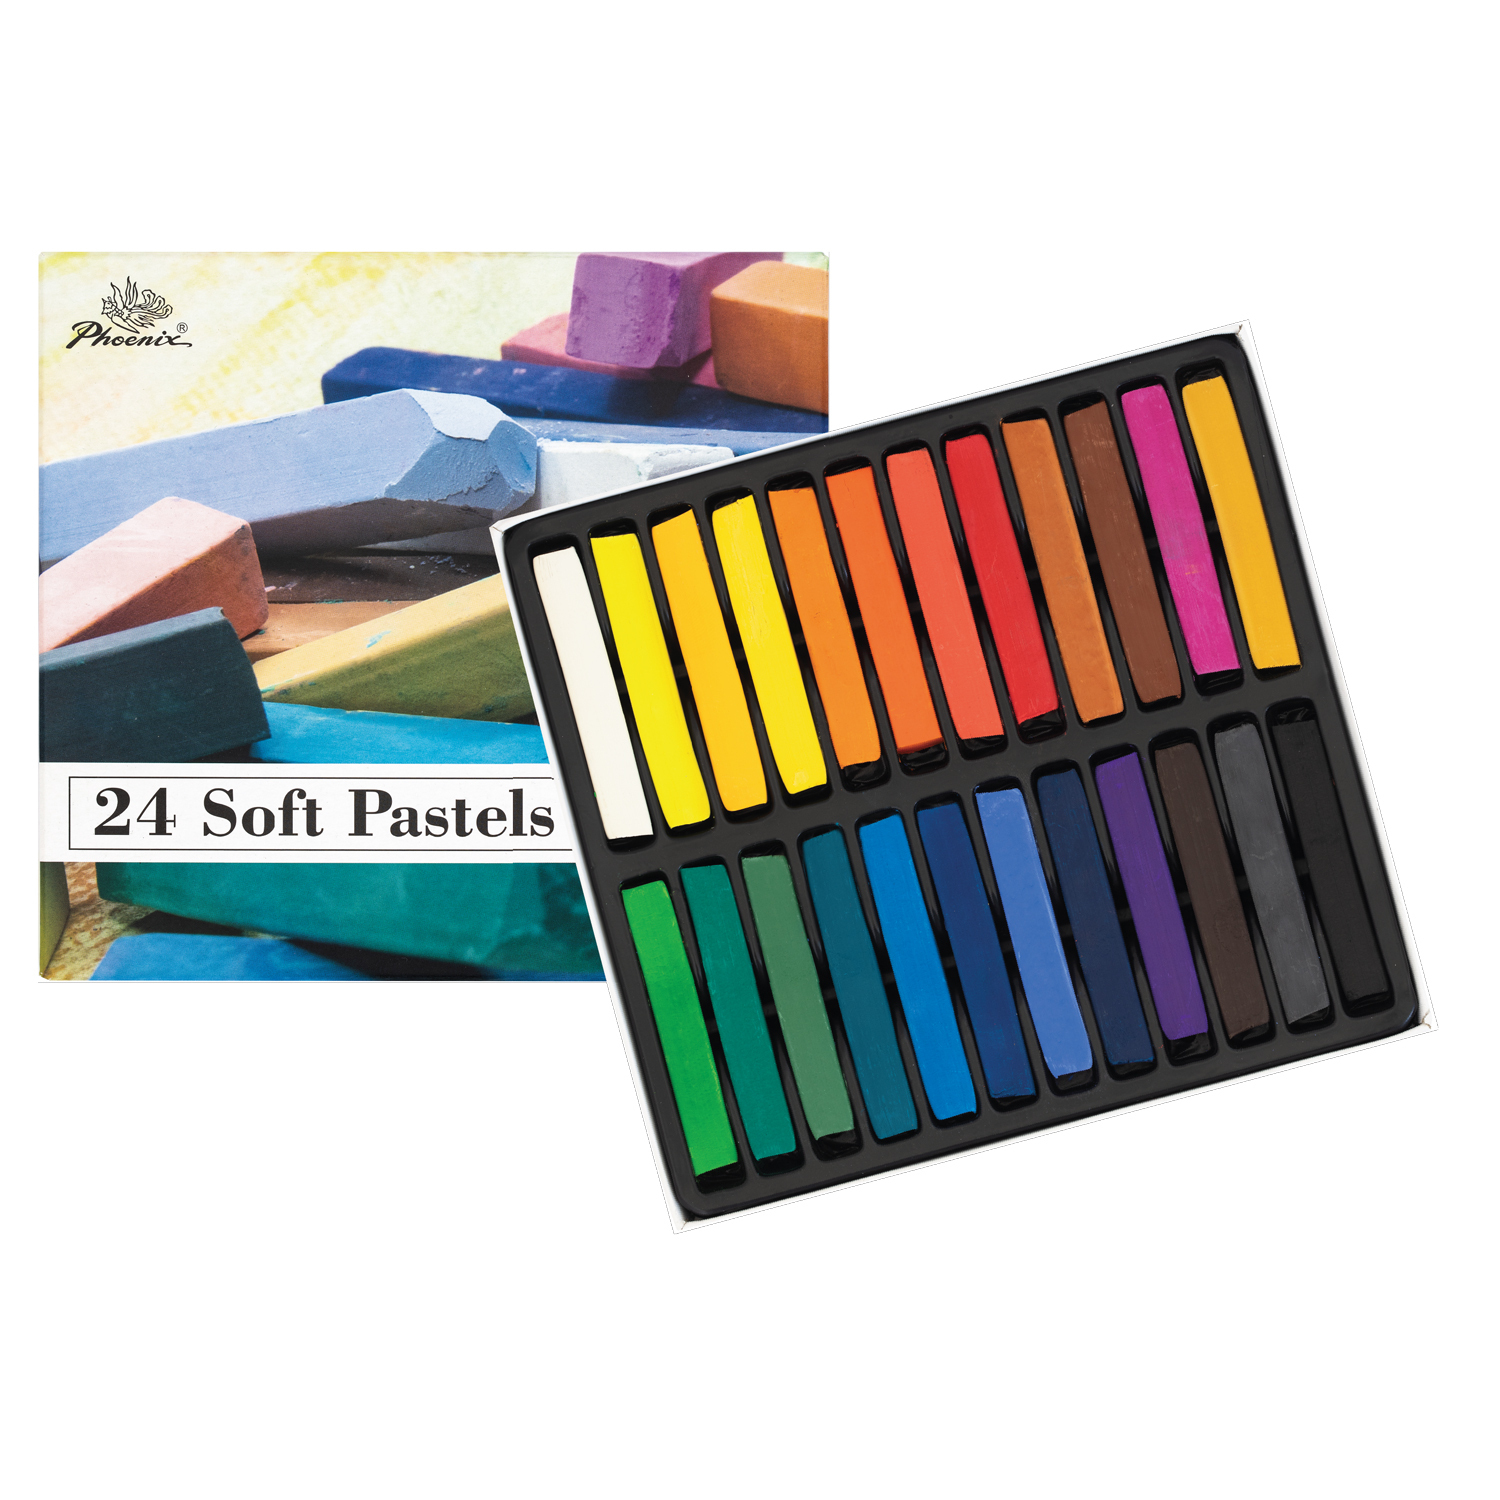 Longan Craft Chalk Paste Paint Set 12 Colors Paste with 4